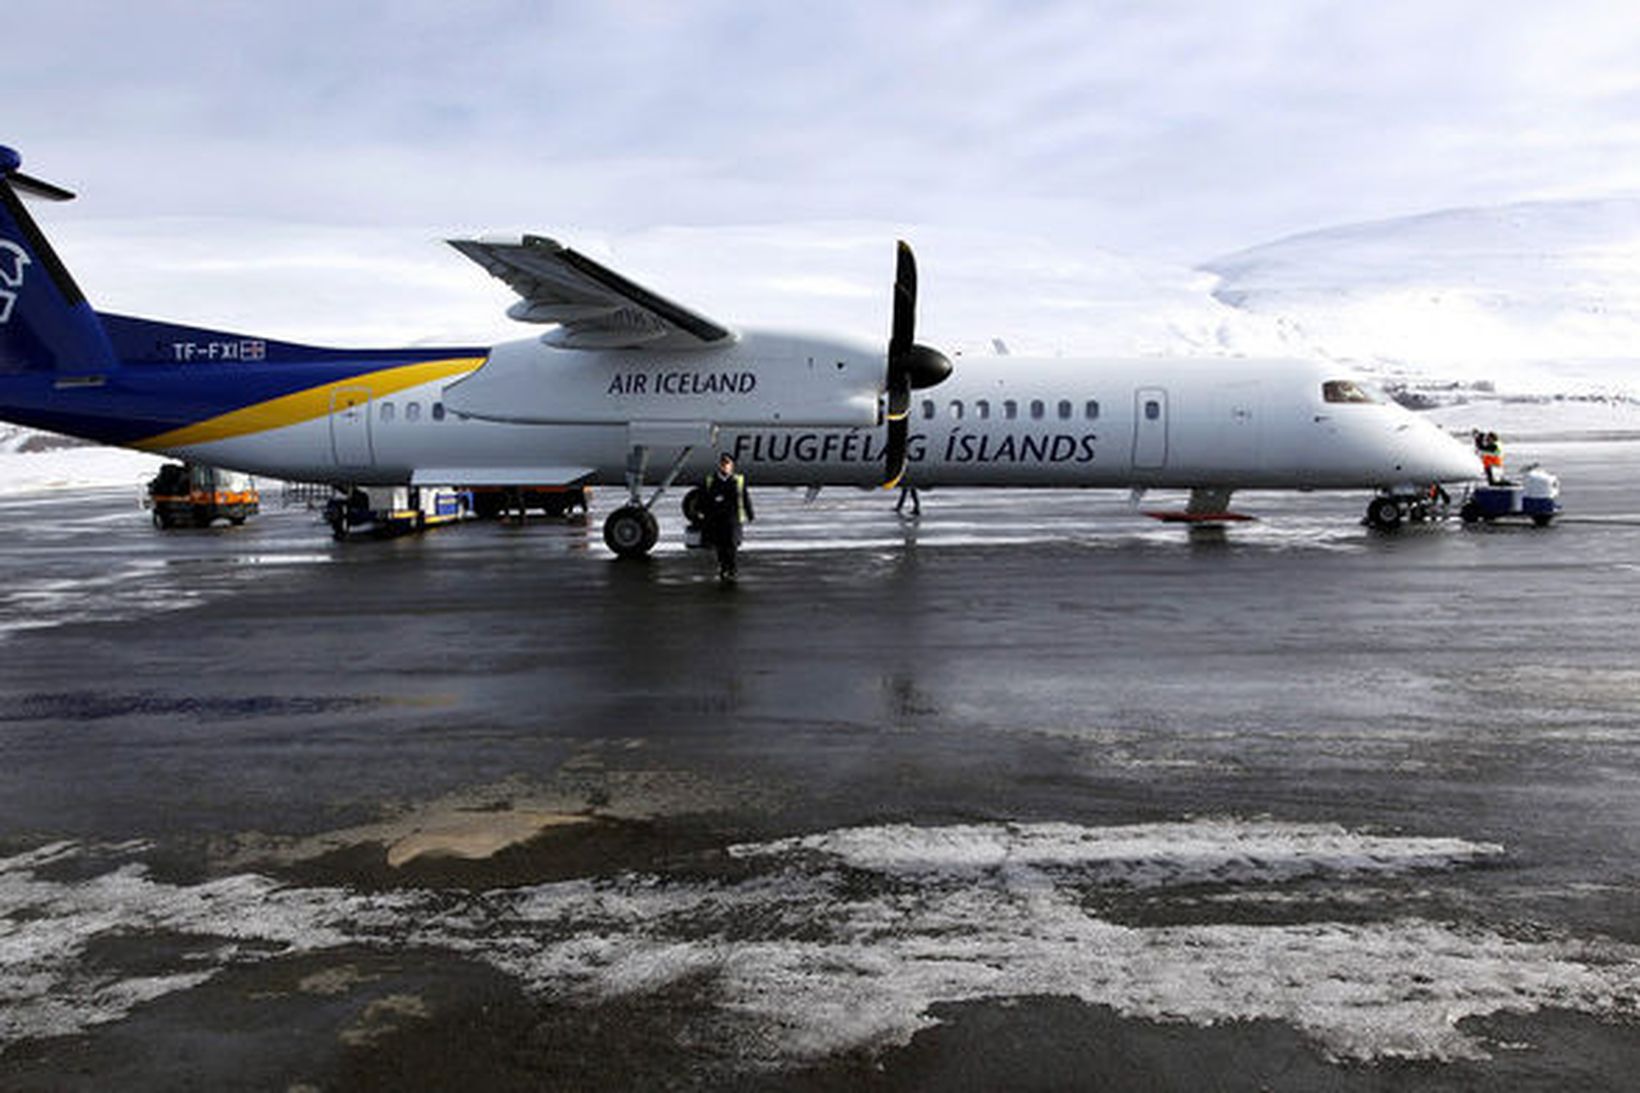 Jómfrúarferð Bombardier Q400 flugvélar var miðvikudaginn 2. mars 2016.